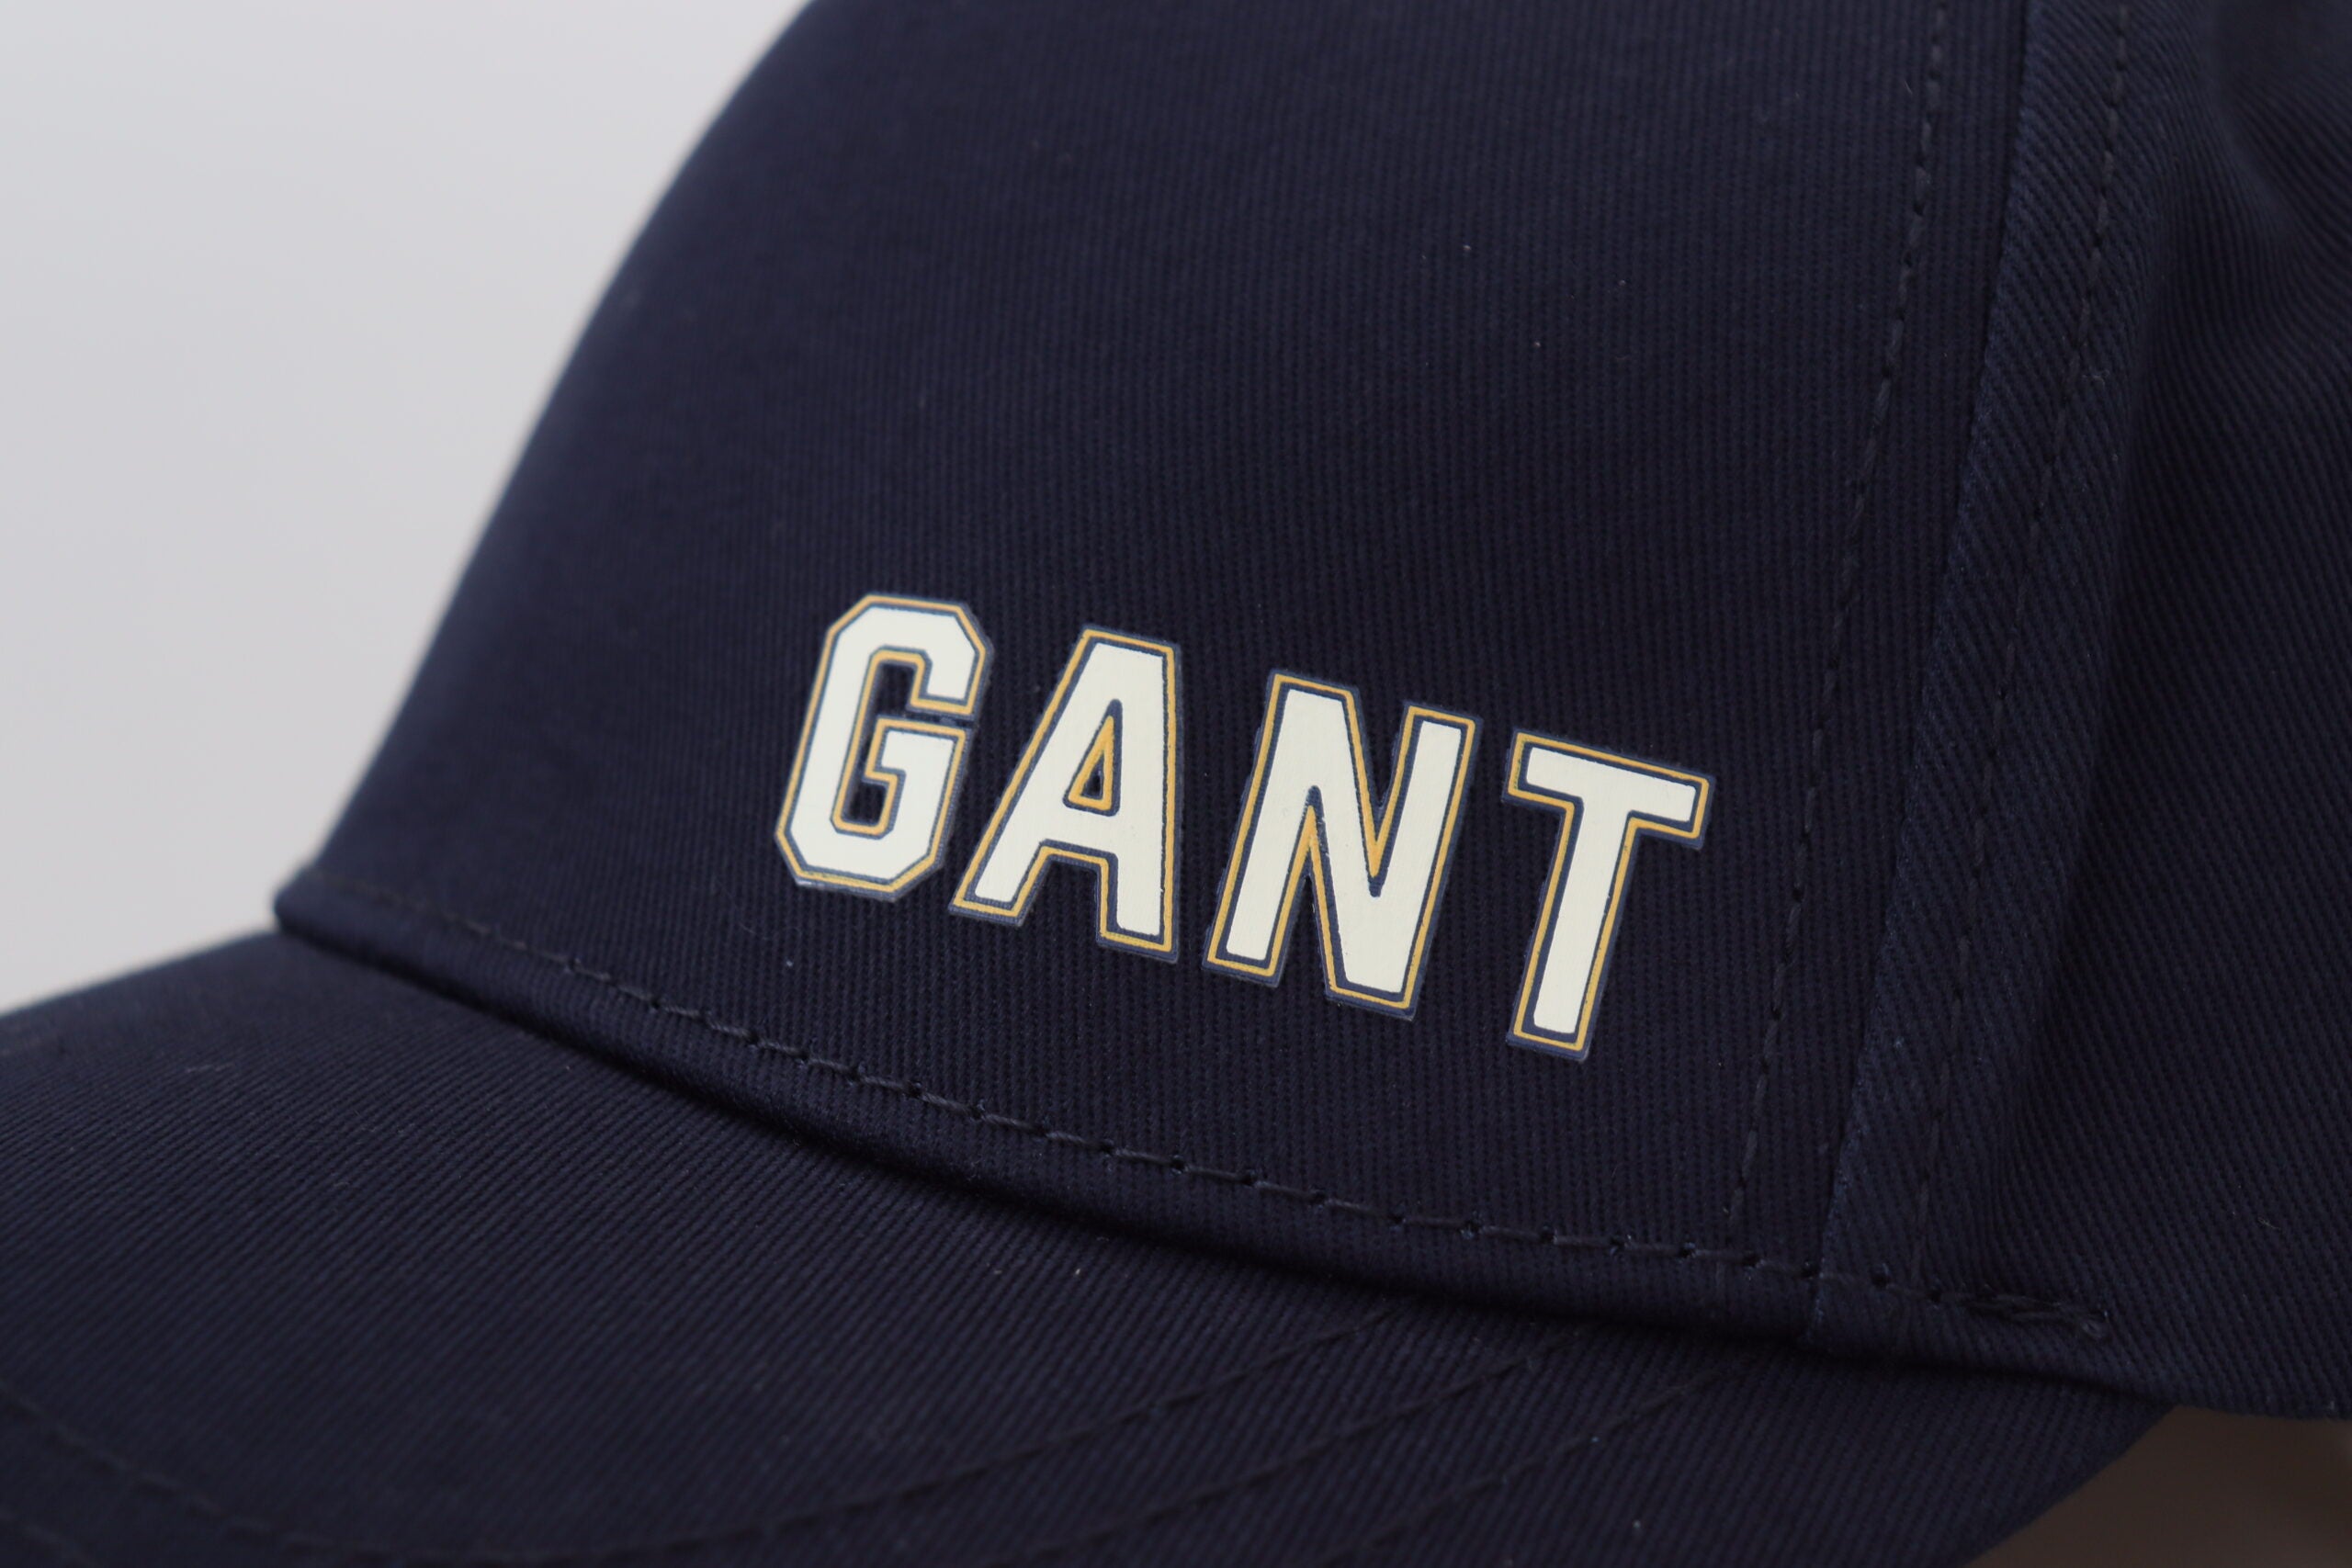 Gorra de béisbol de algodón azul elegante de Gant